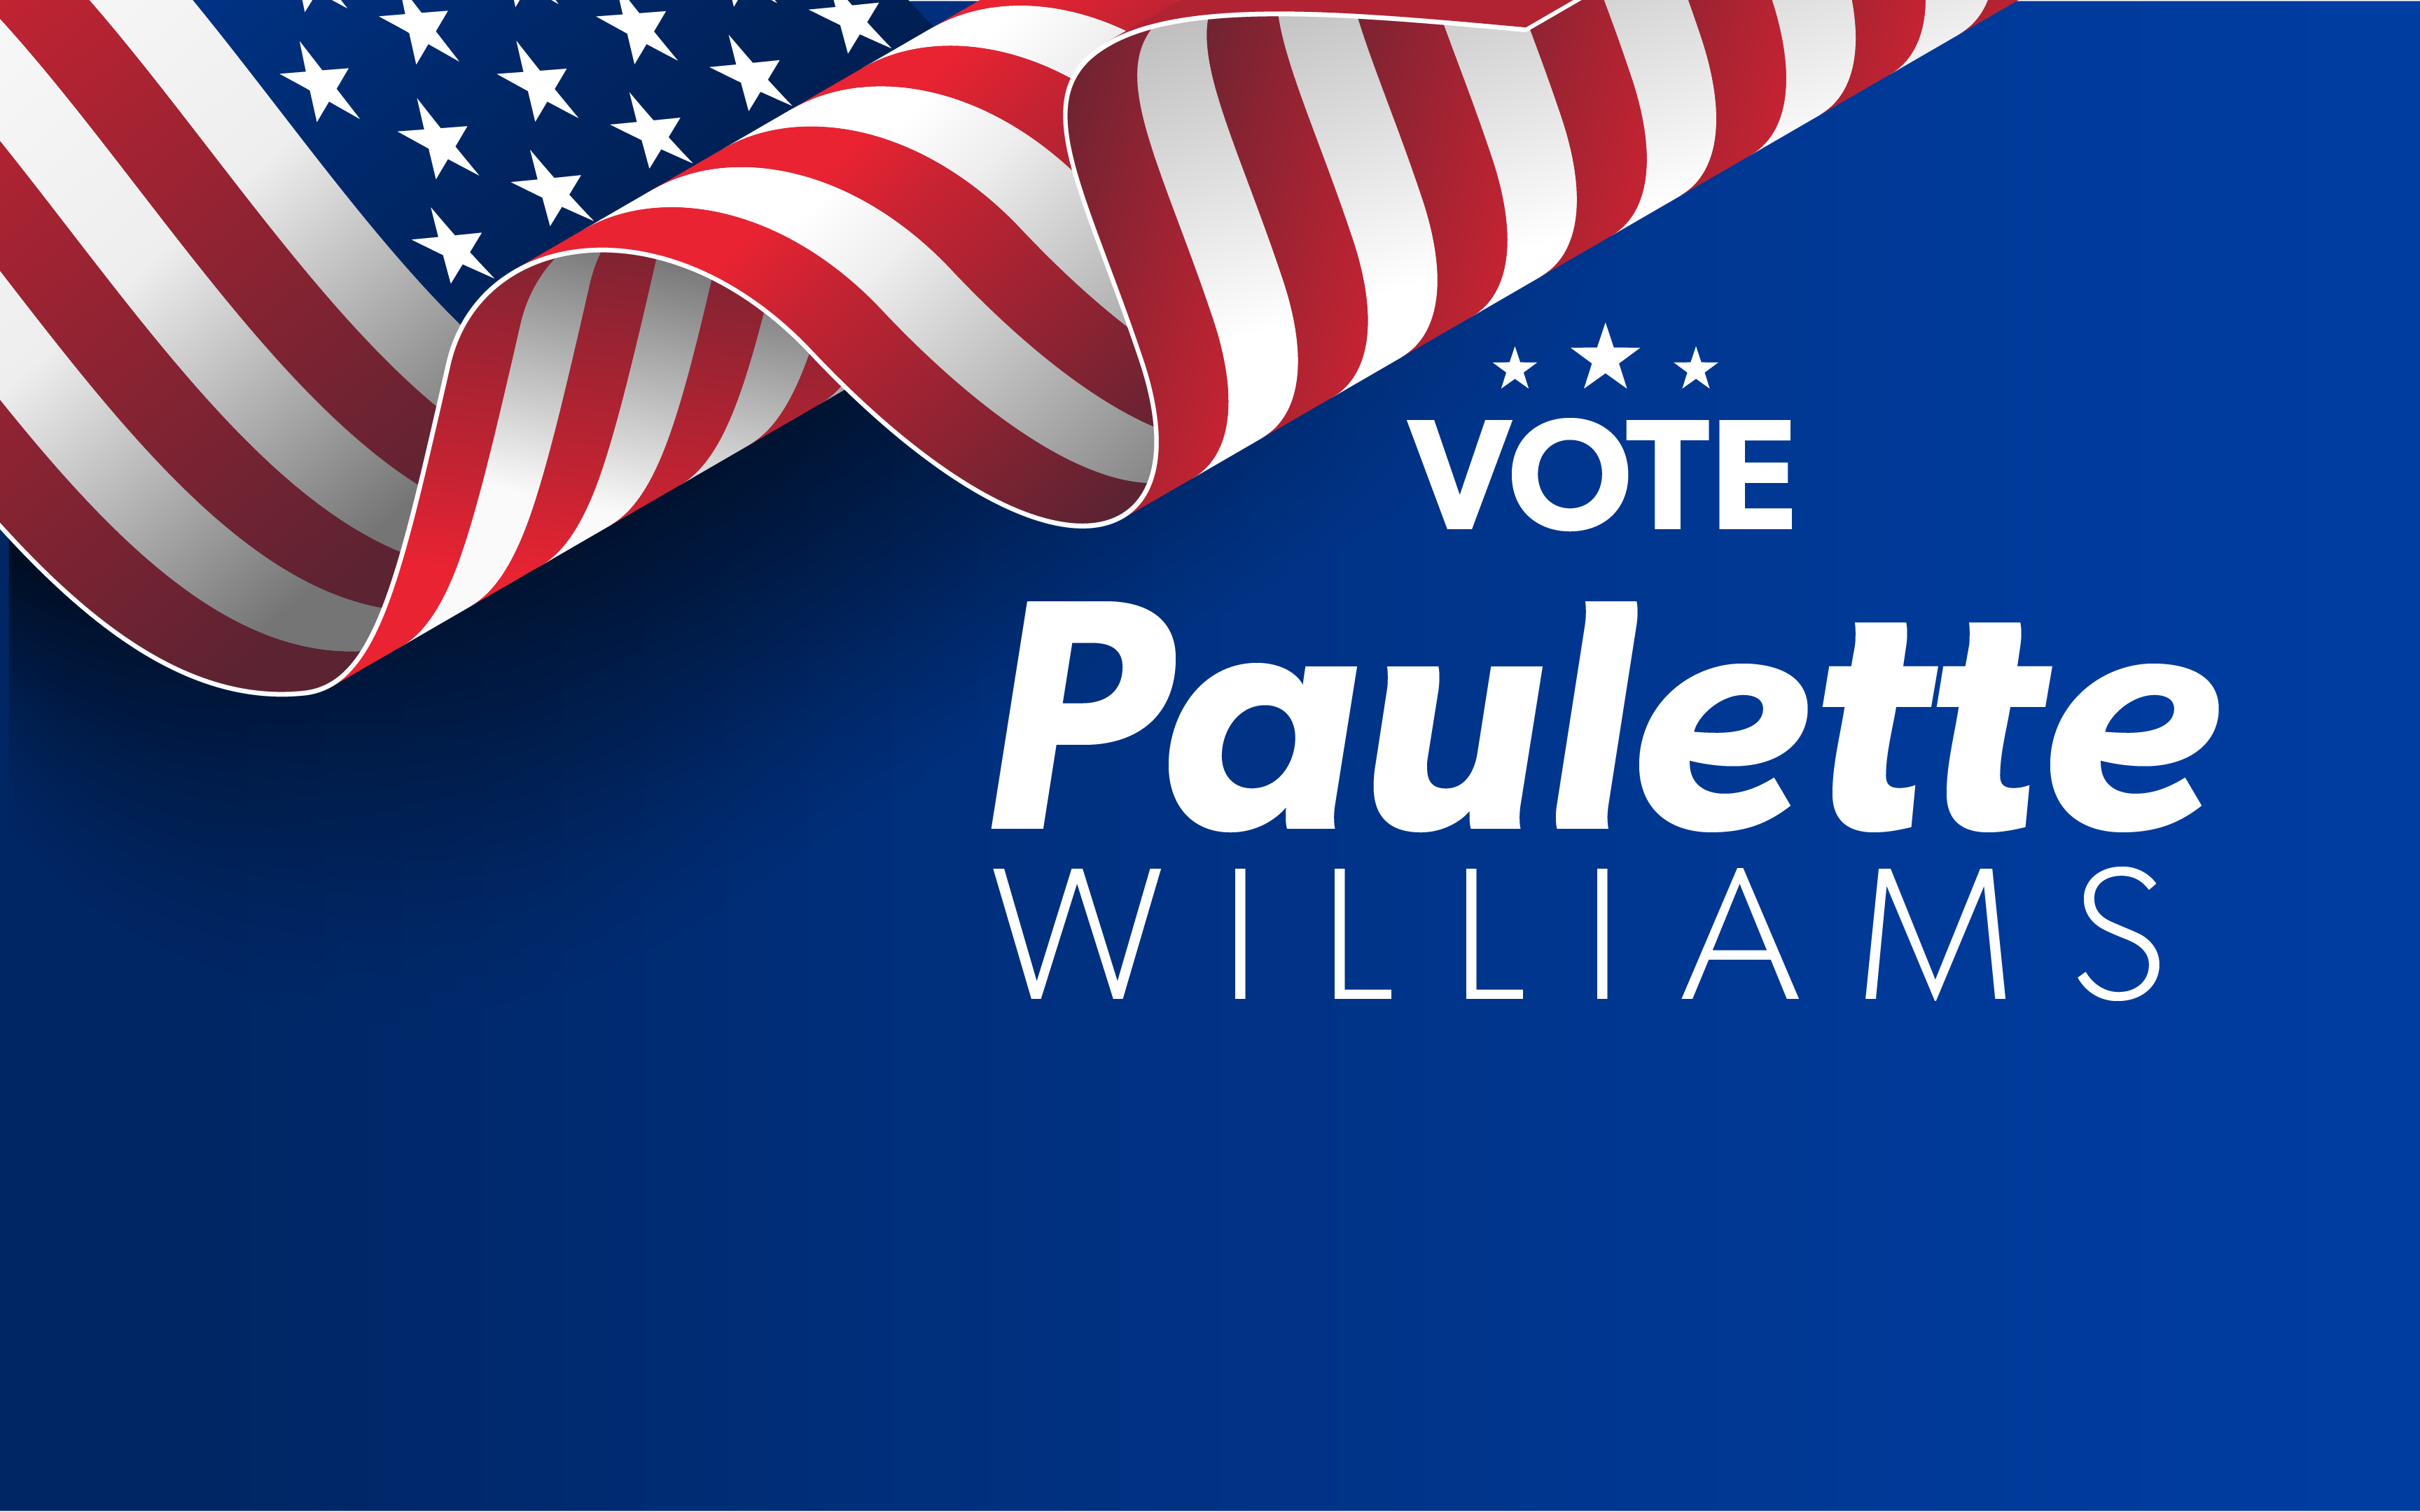 Vote Paulette Williams